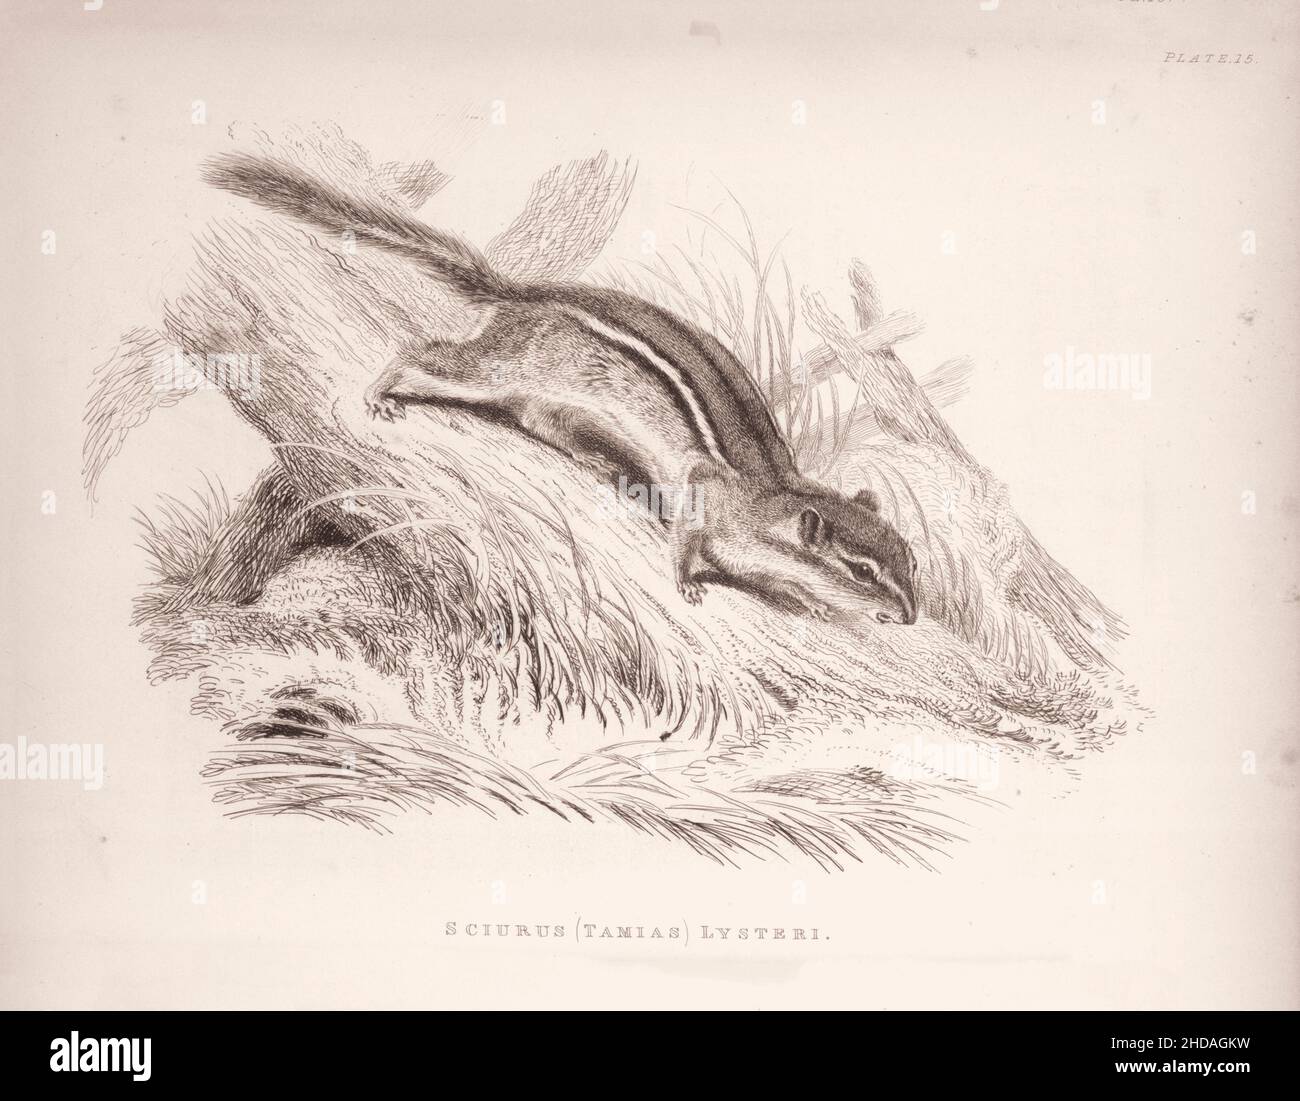 Incisione vintage (disegno) dell'Hackee. Sciurus (Tamias) Lysteri. 1829-1837, di J. Murray (Editore) Foto Stock